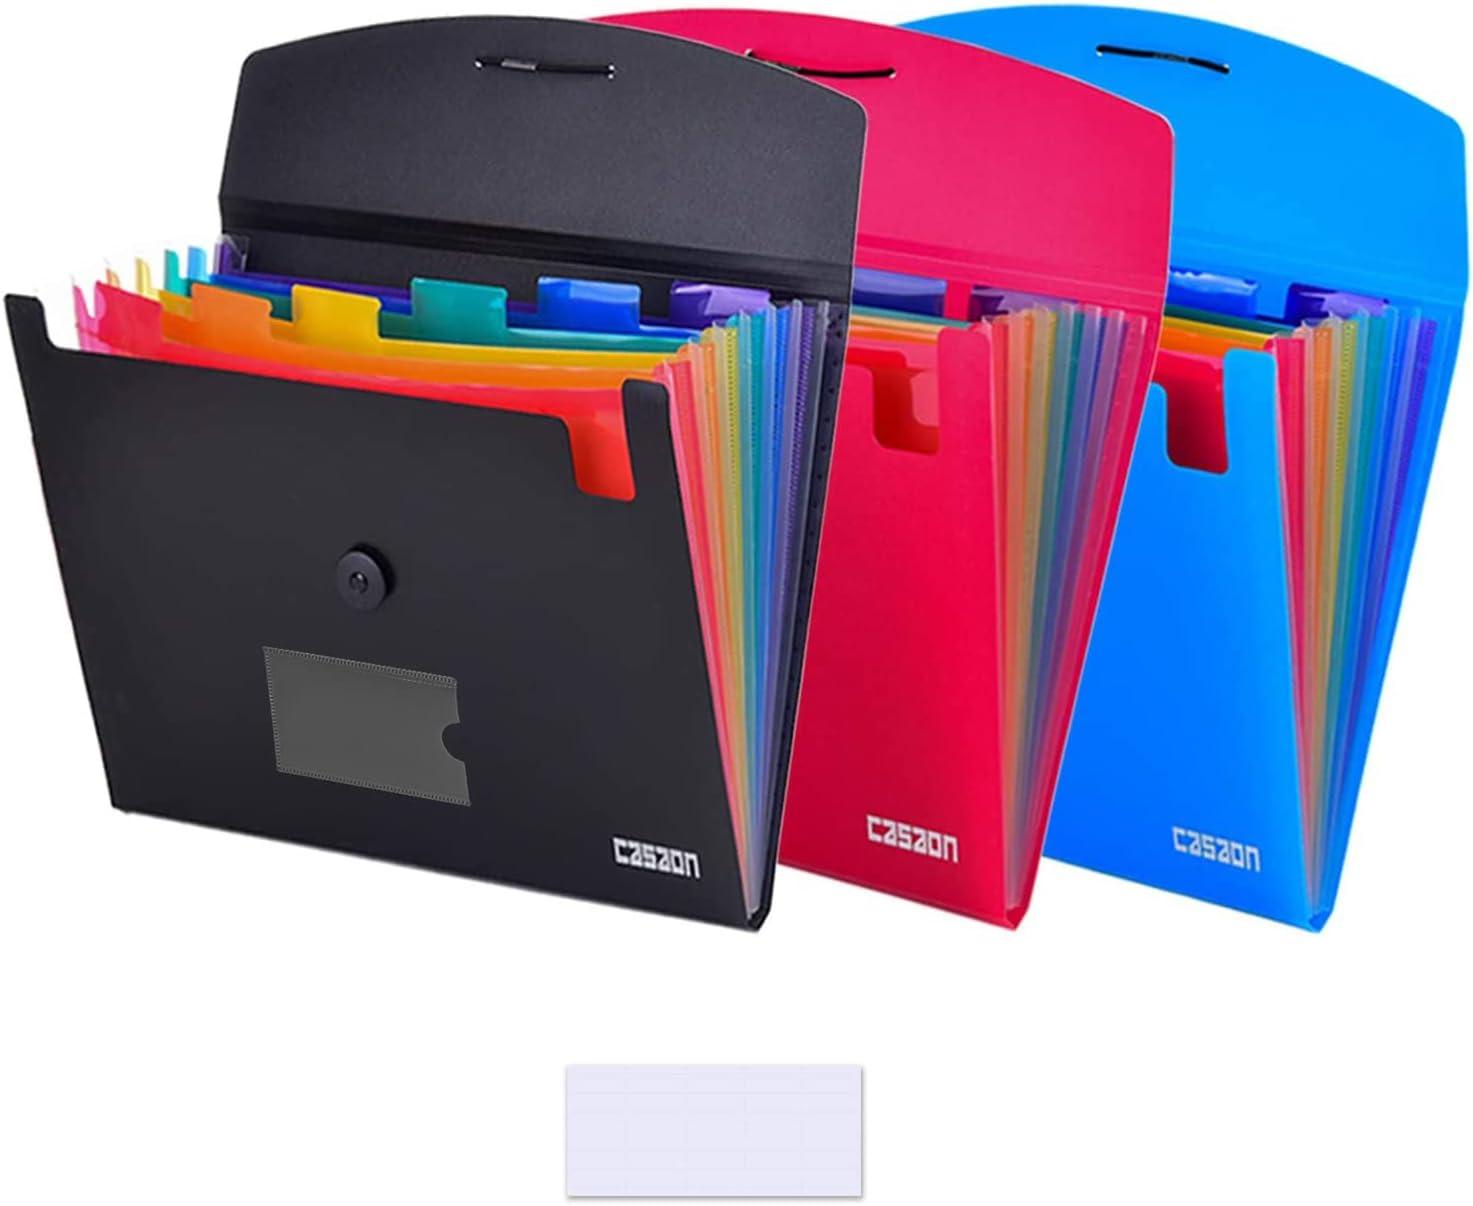 7-pocket expanding file 3pcs plastic expandable file folder - black/blue/red  casaon b07xr1q2pk